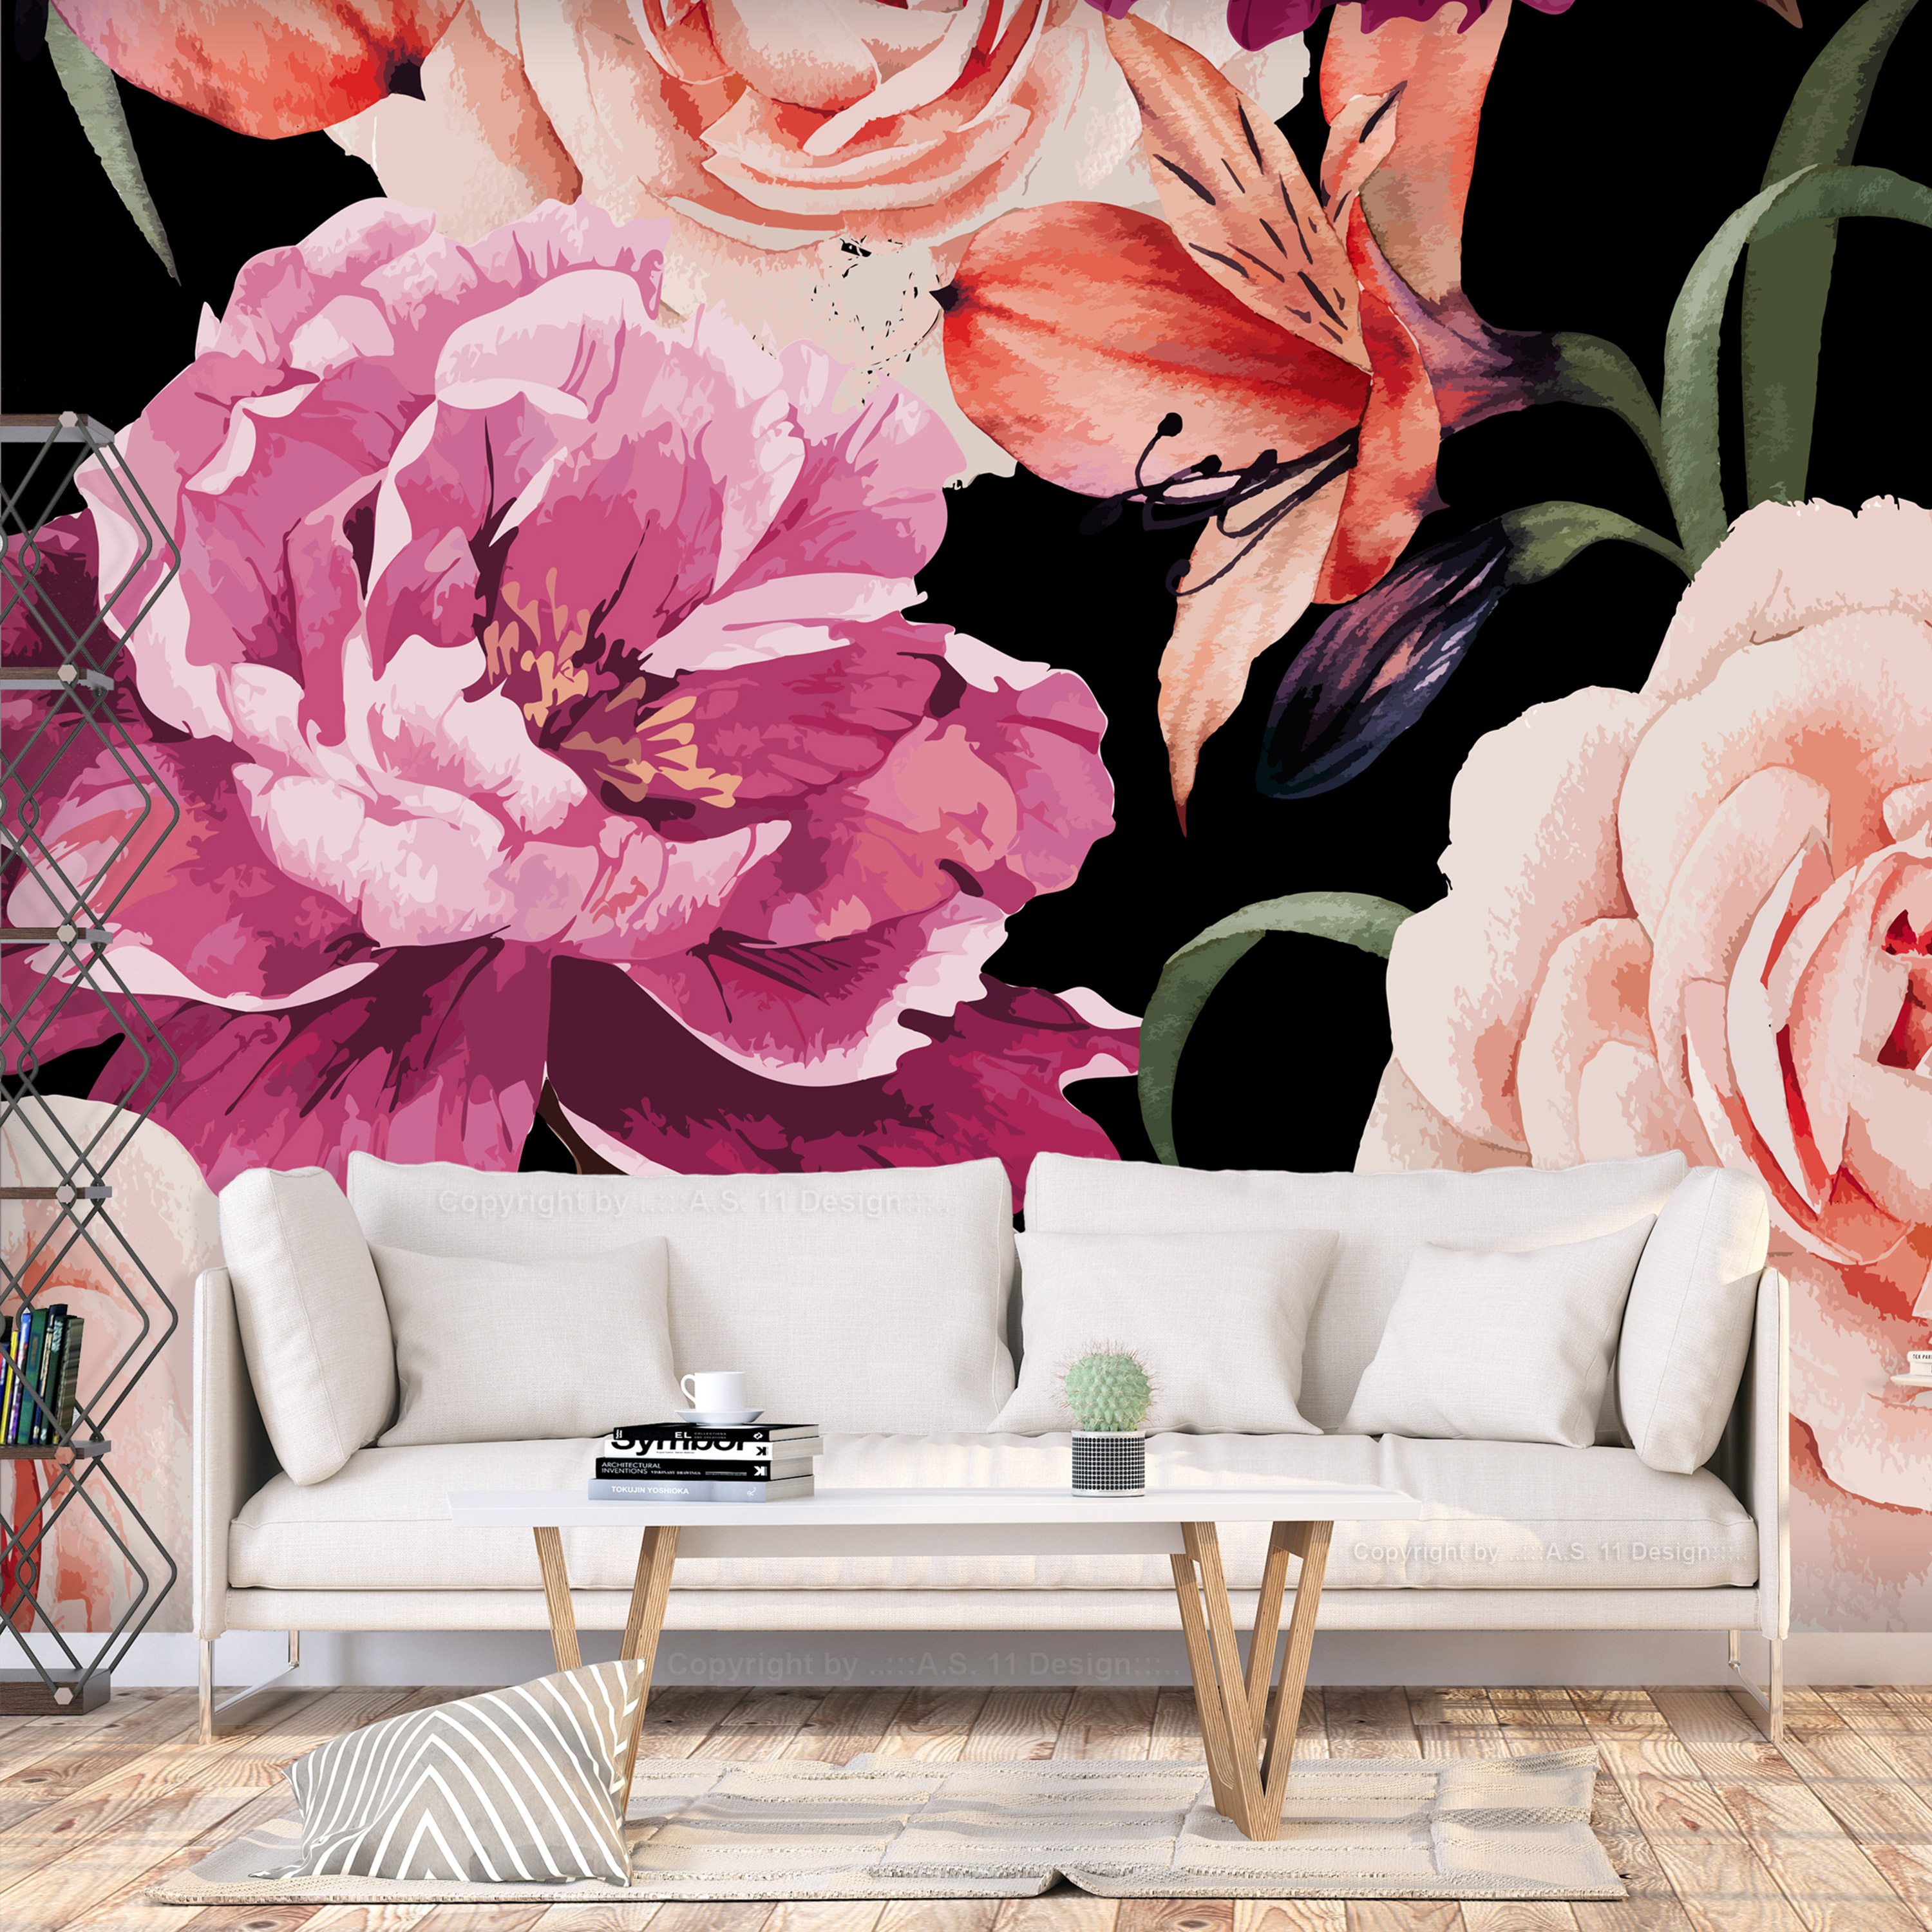 Self-adhesive Wallpaper - Roses of Love - 392x280